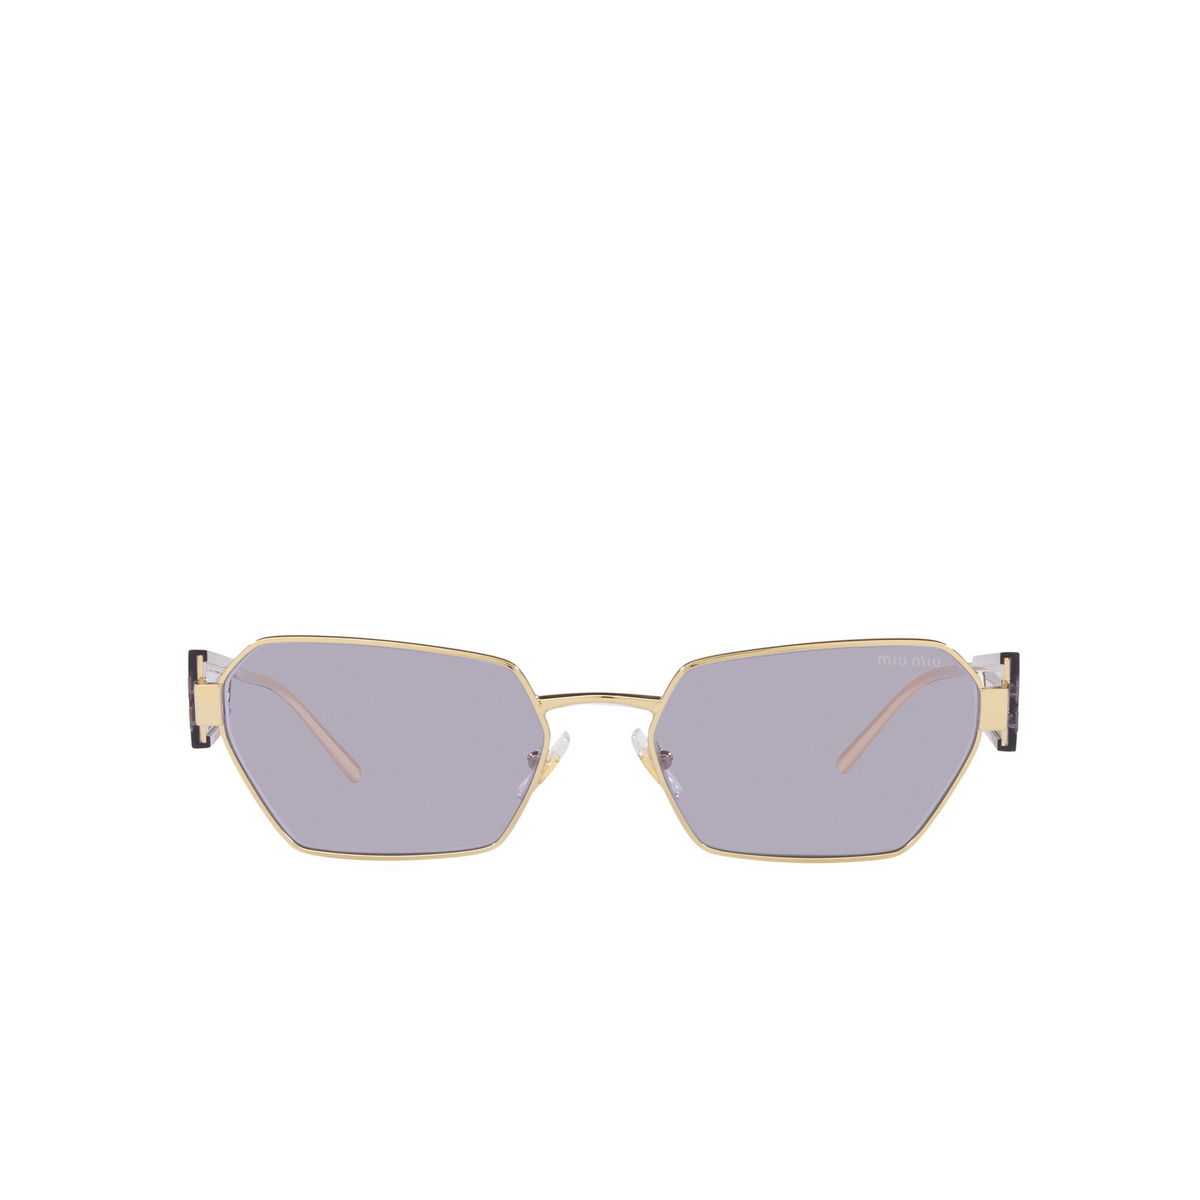 Miu Miu MU 53WS Sunglasses ZVN05S Pale Gold - front view